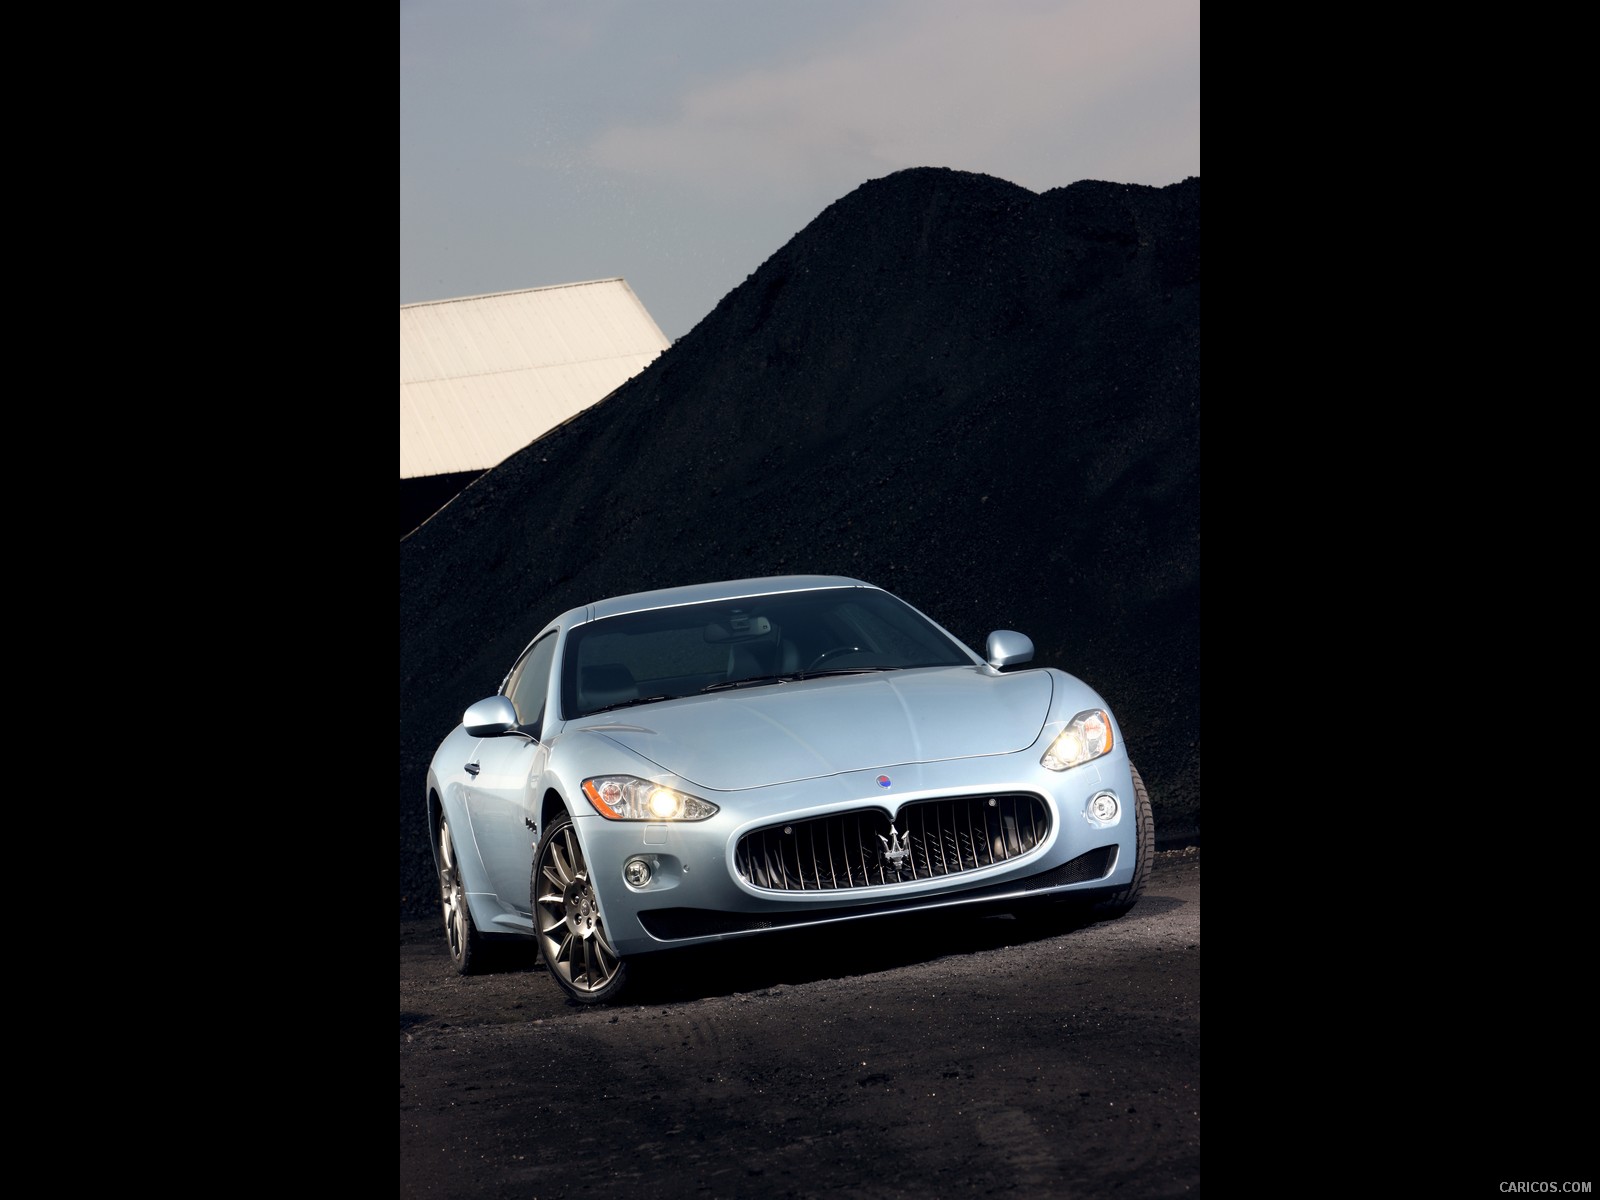 Maserati GranTurismo S Automatic (2010)  - Front Angle , #11 of 58